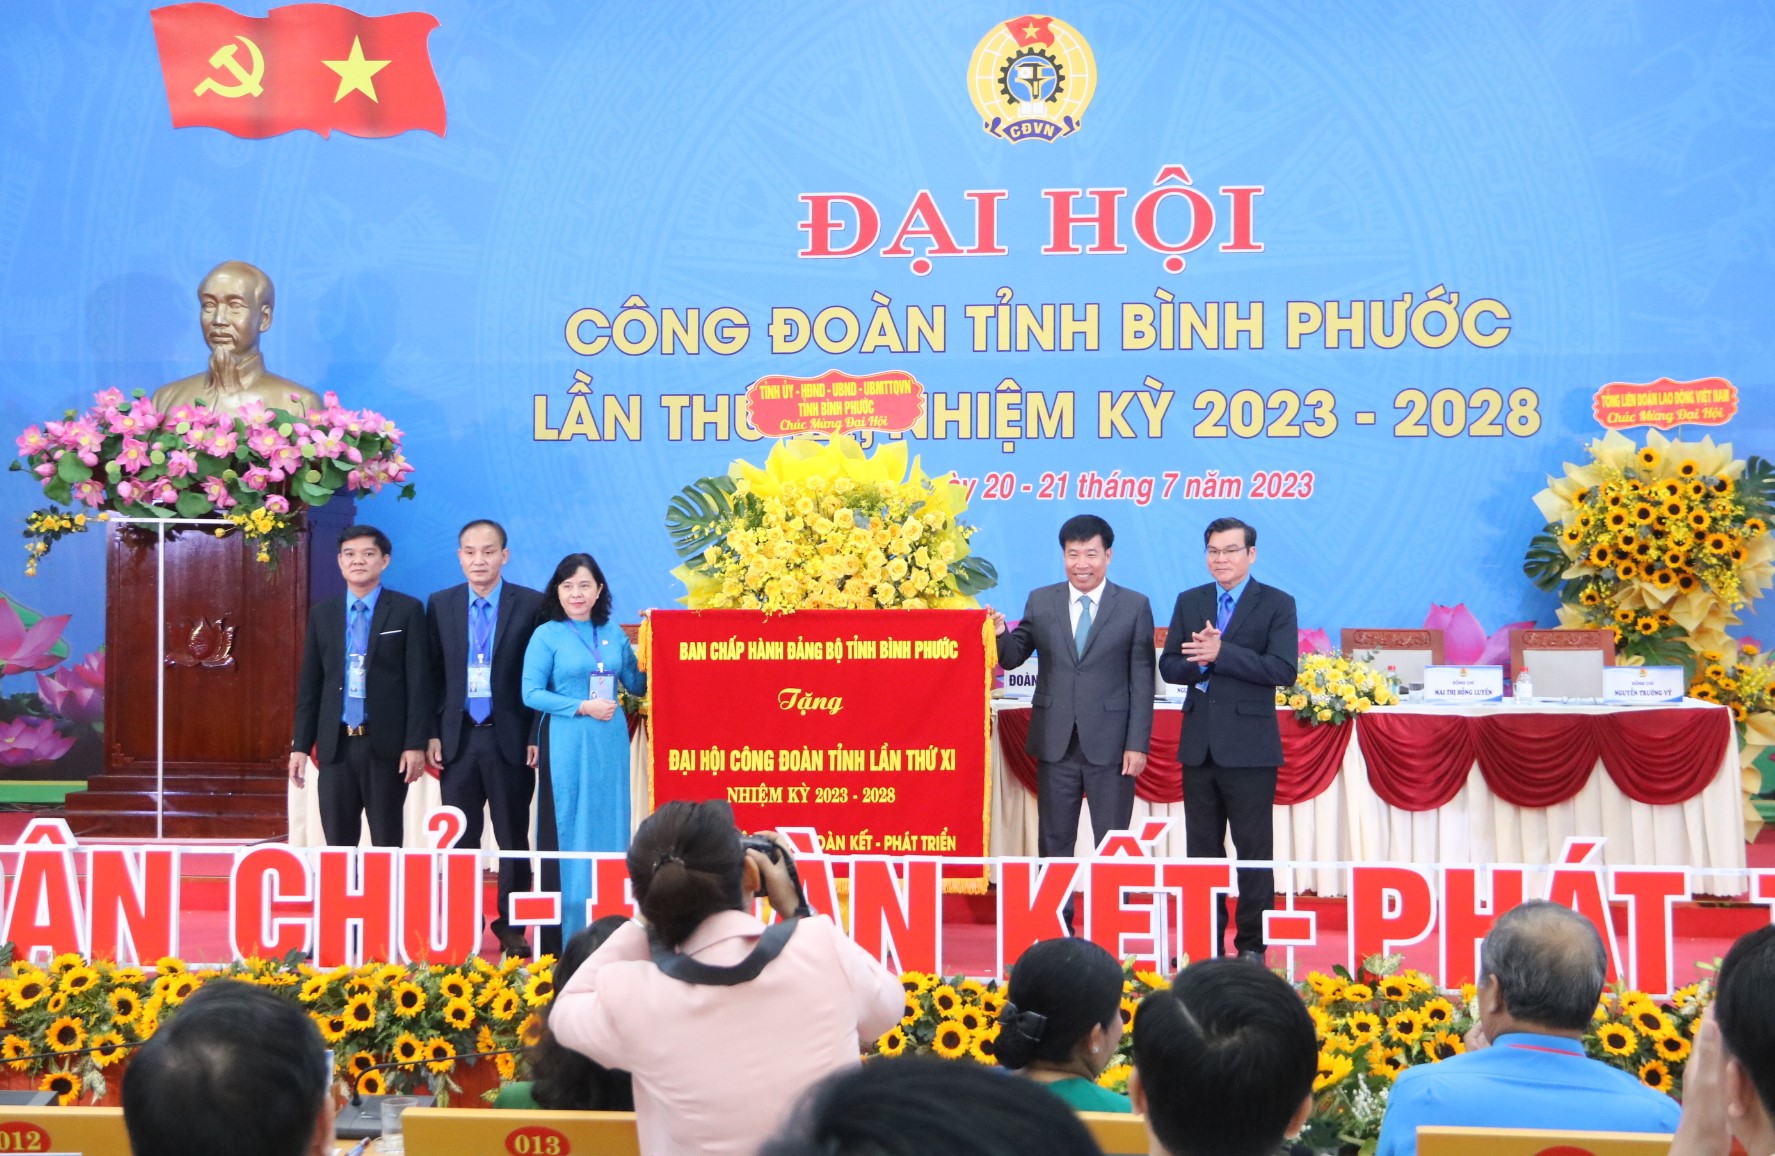 BCH Đảng Bộ tỉnh Bình Phước tặng bức trướng cho LĐLĐ tỉnh Bình Phước. Ảnh: Đình Trọng